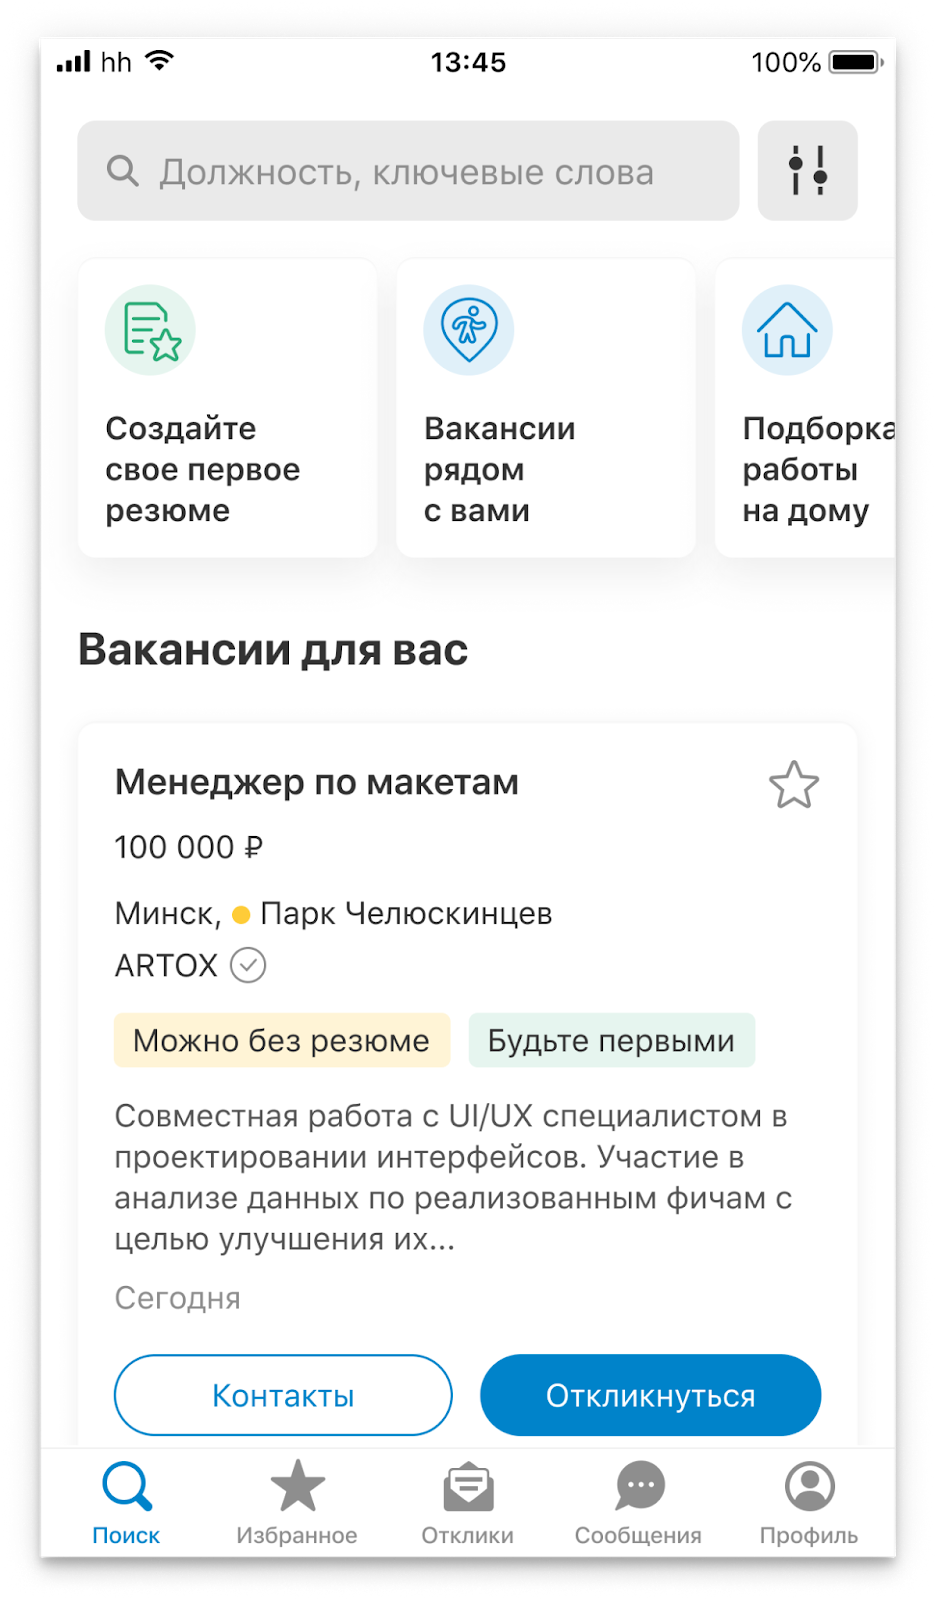 Приложение hh.ru для поиска работы, 2021 год. Обе платформы выглядят идентично